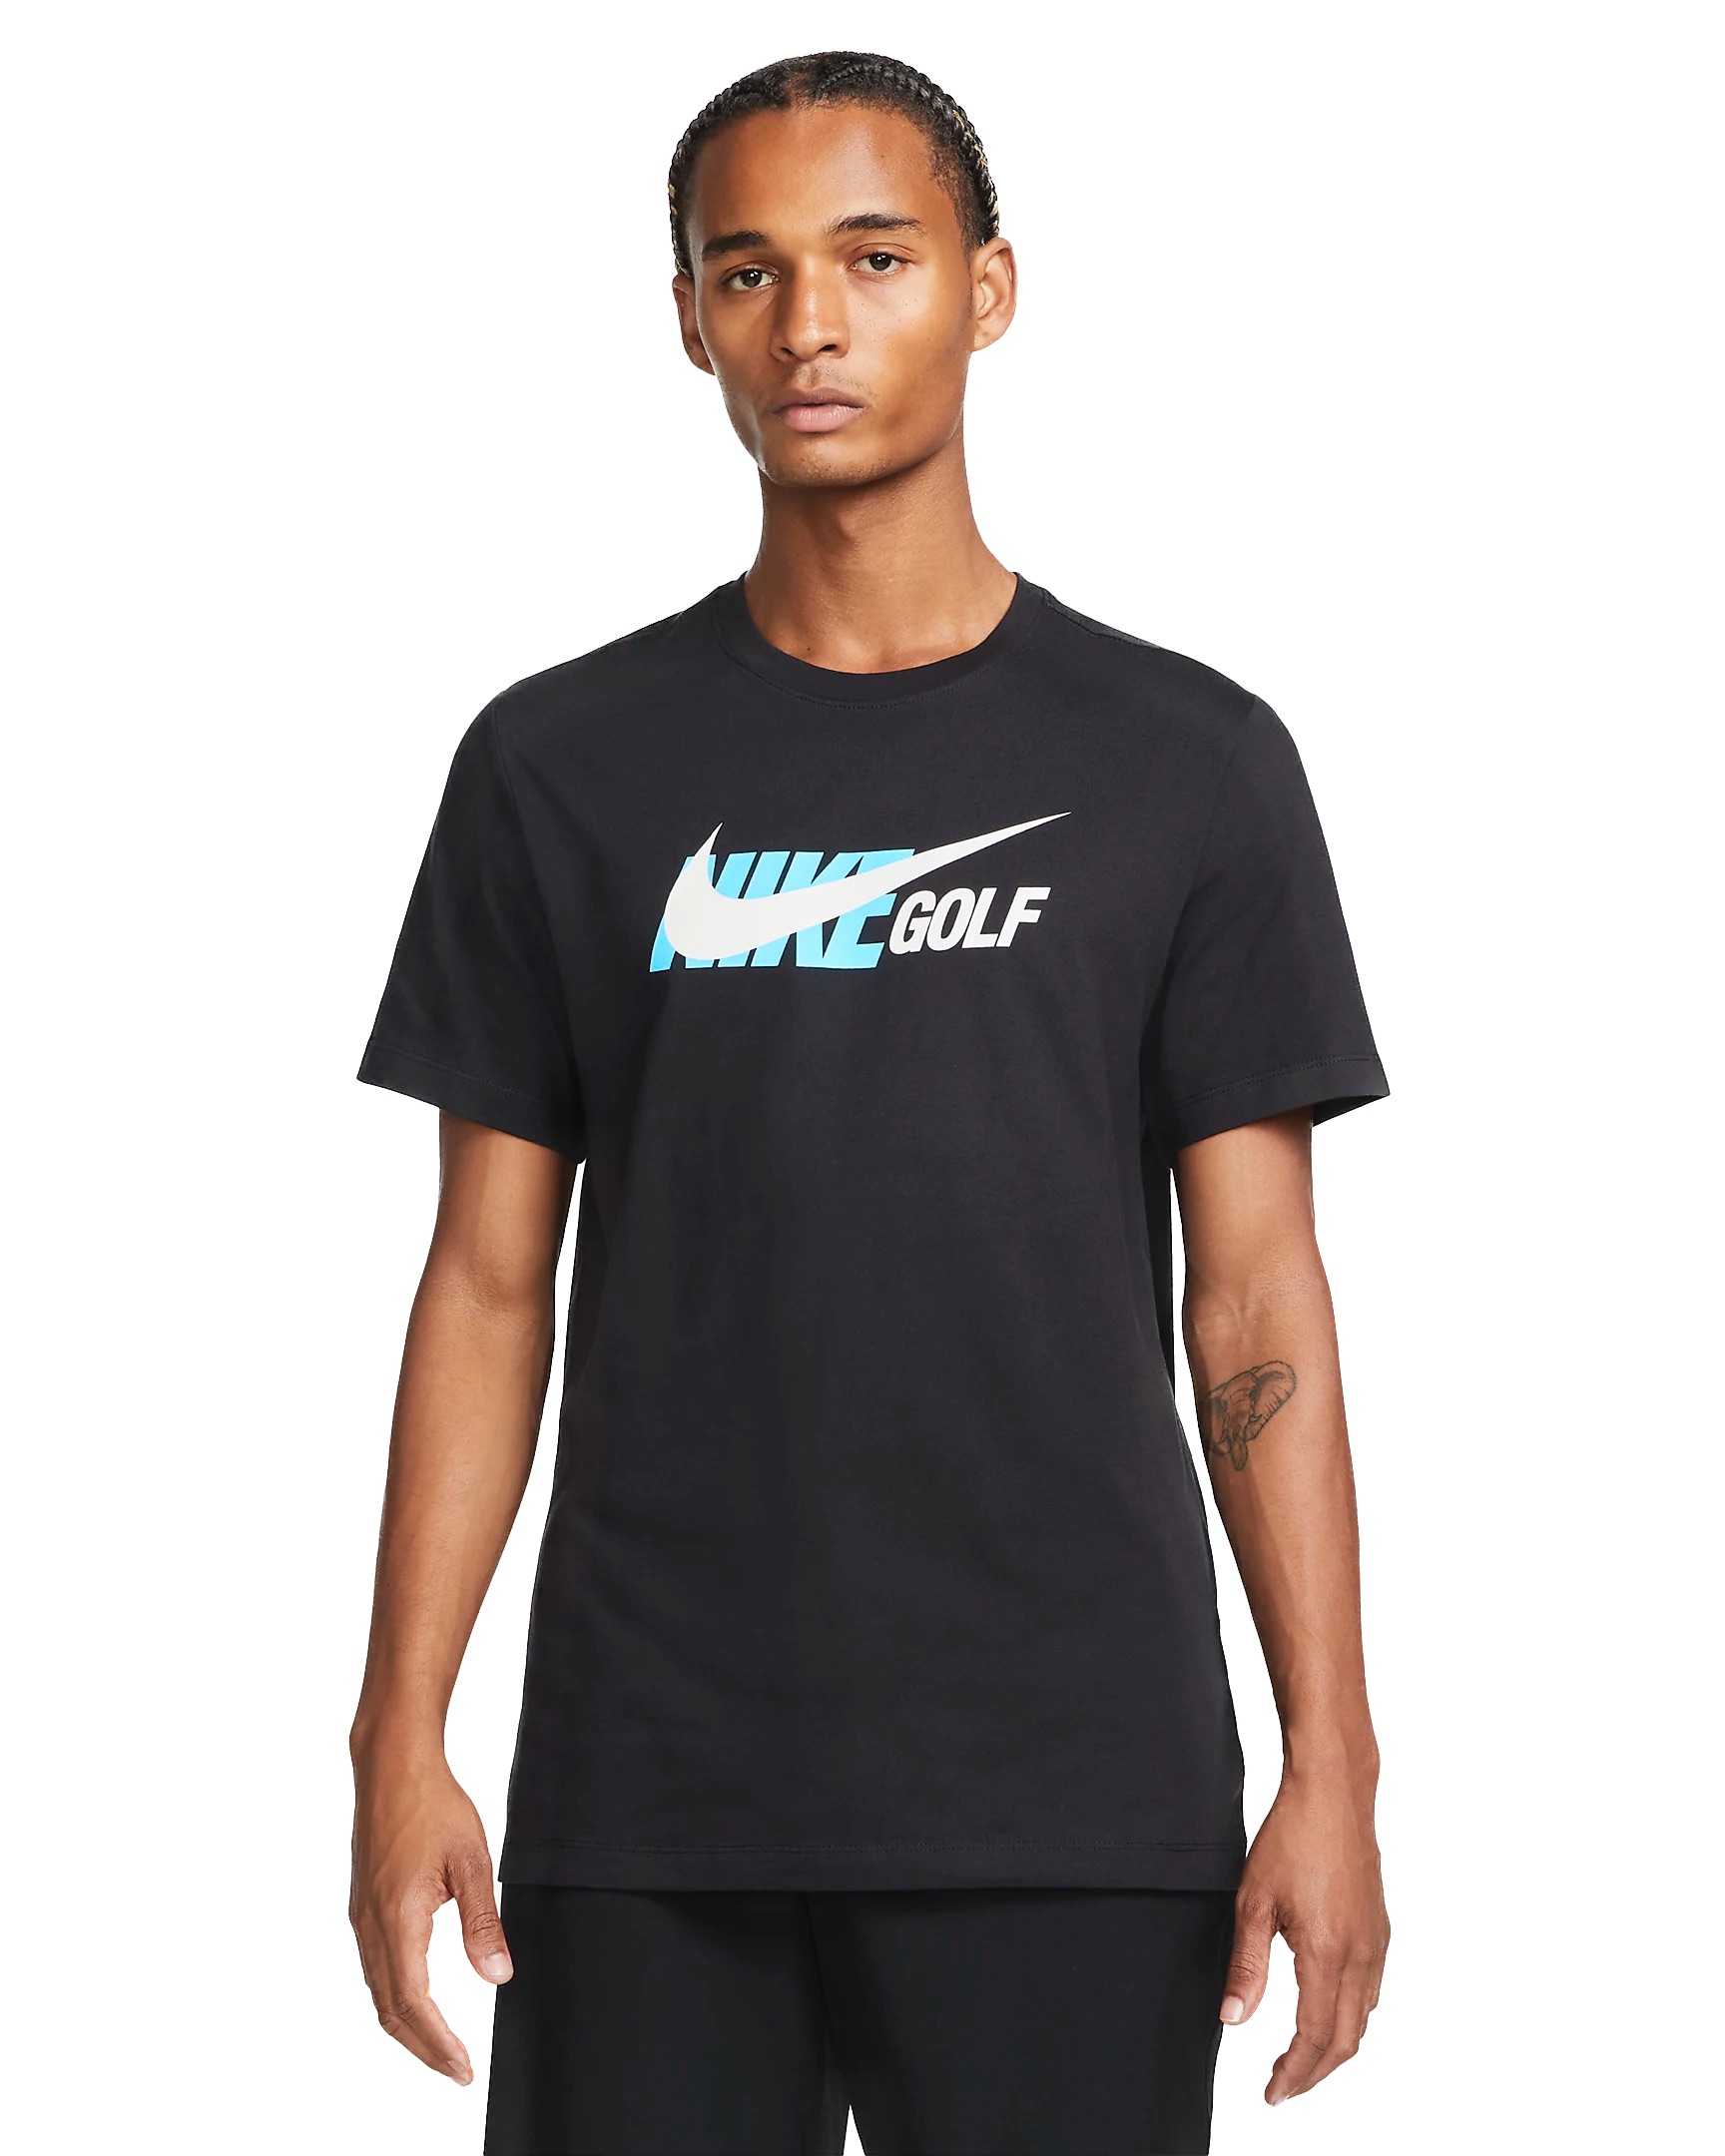 Nike Golf T-Shirt Shirts / Polos Herren Golfbekleidung golfshop.de